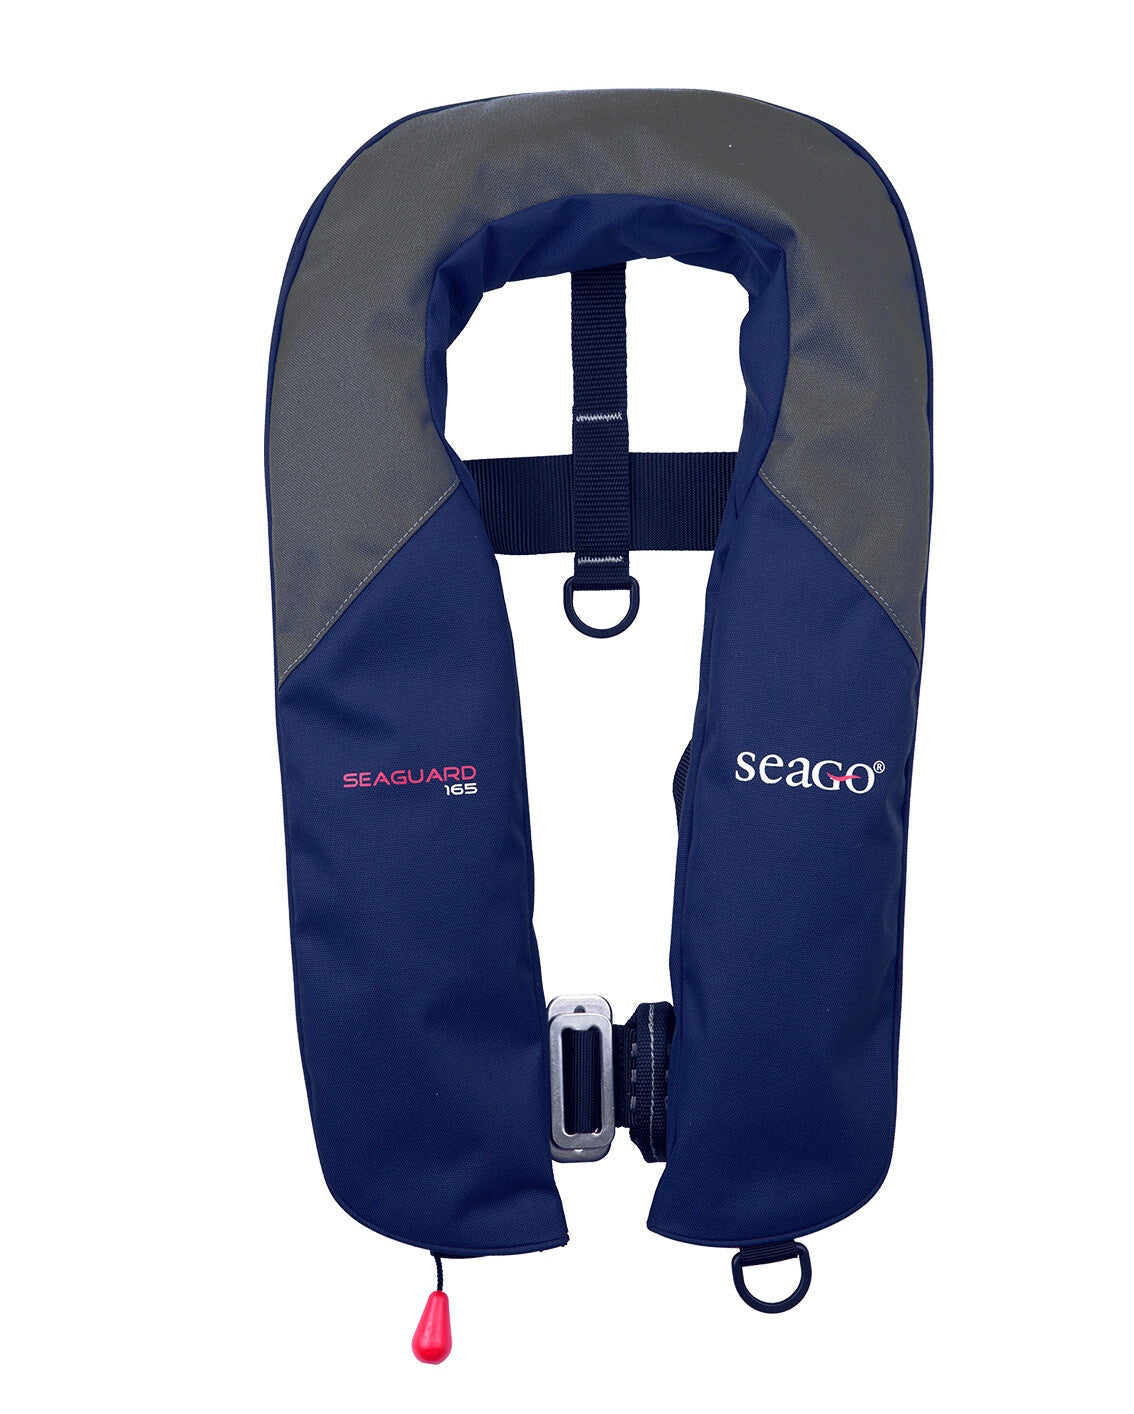 Seago Lifejacket 165 Newtons